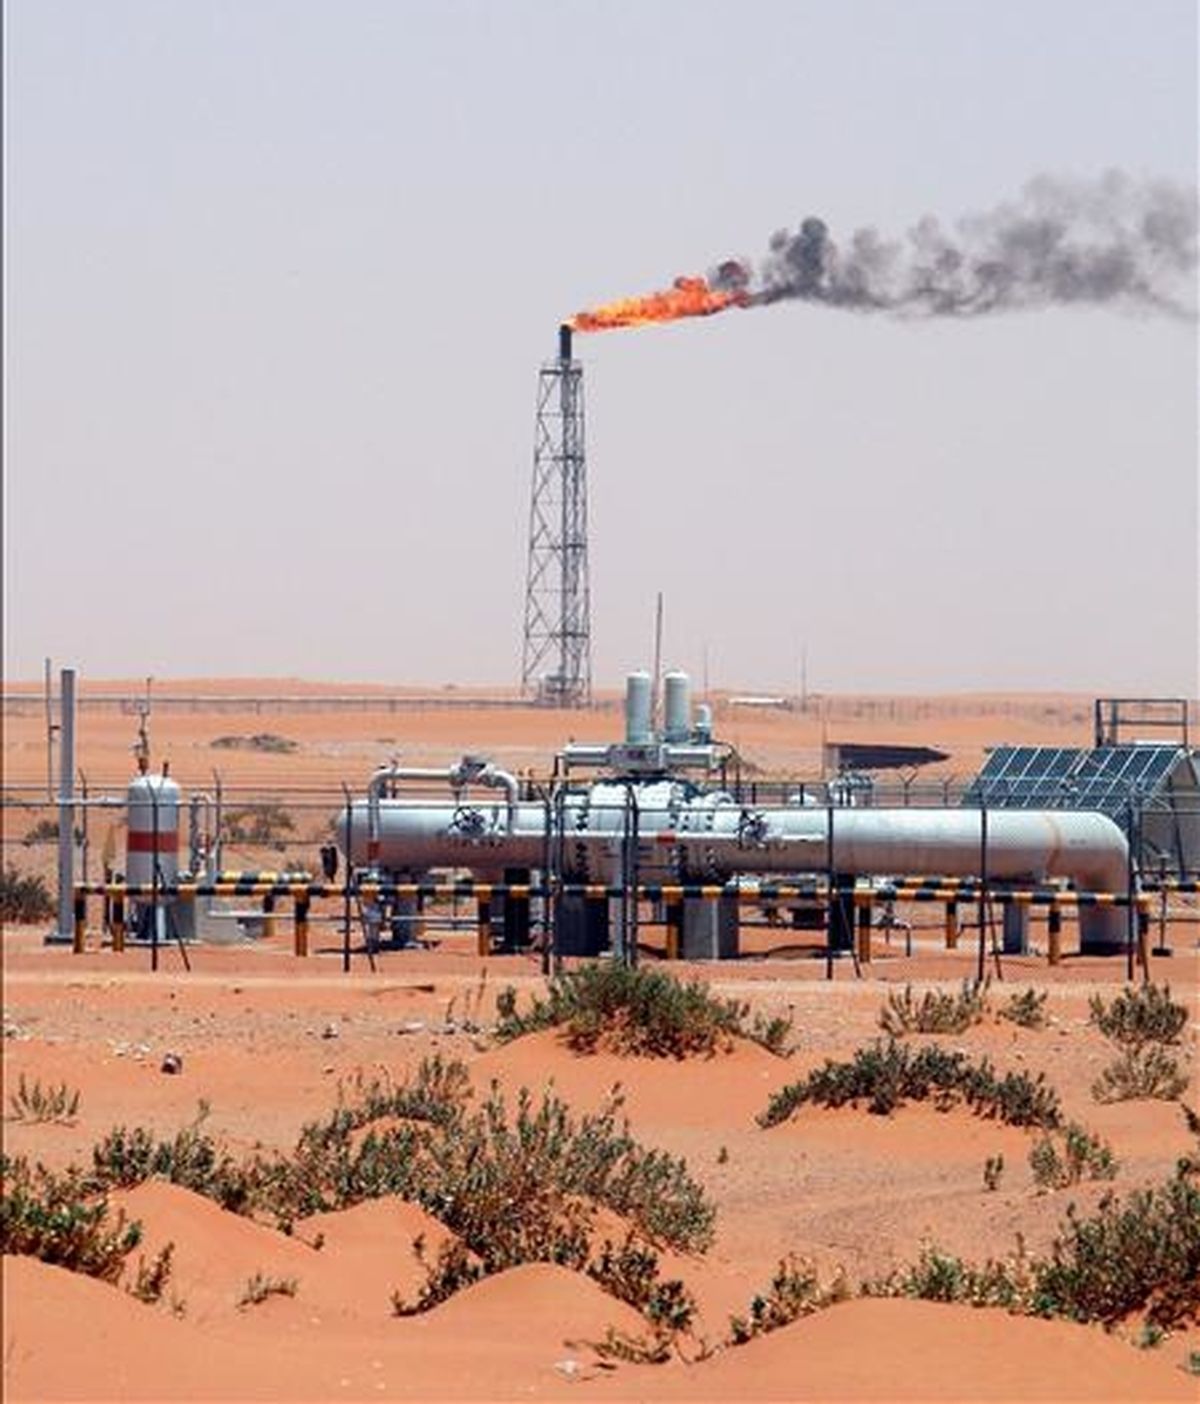 El yacimiento de petróleo Khurais en el desierto, a unos 160 kilómetros de Riyadh (Arabia Saudí). EFE/Archivo